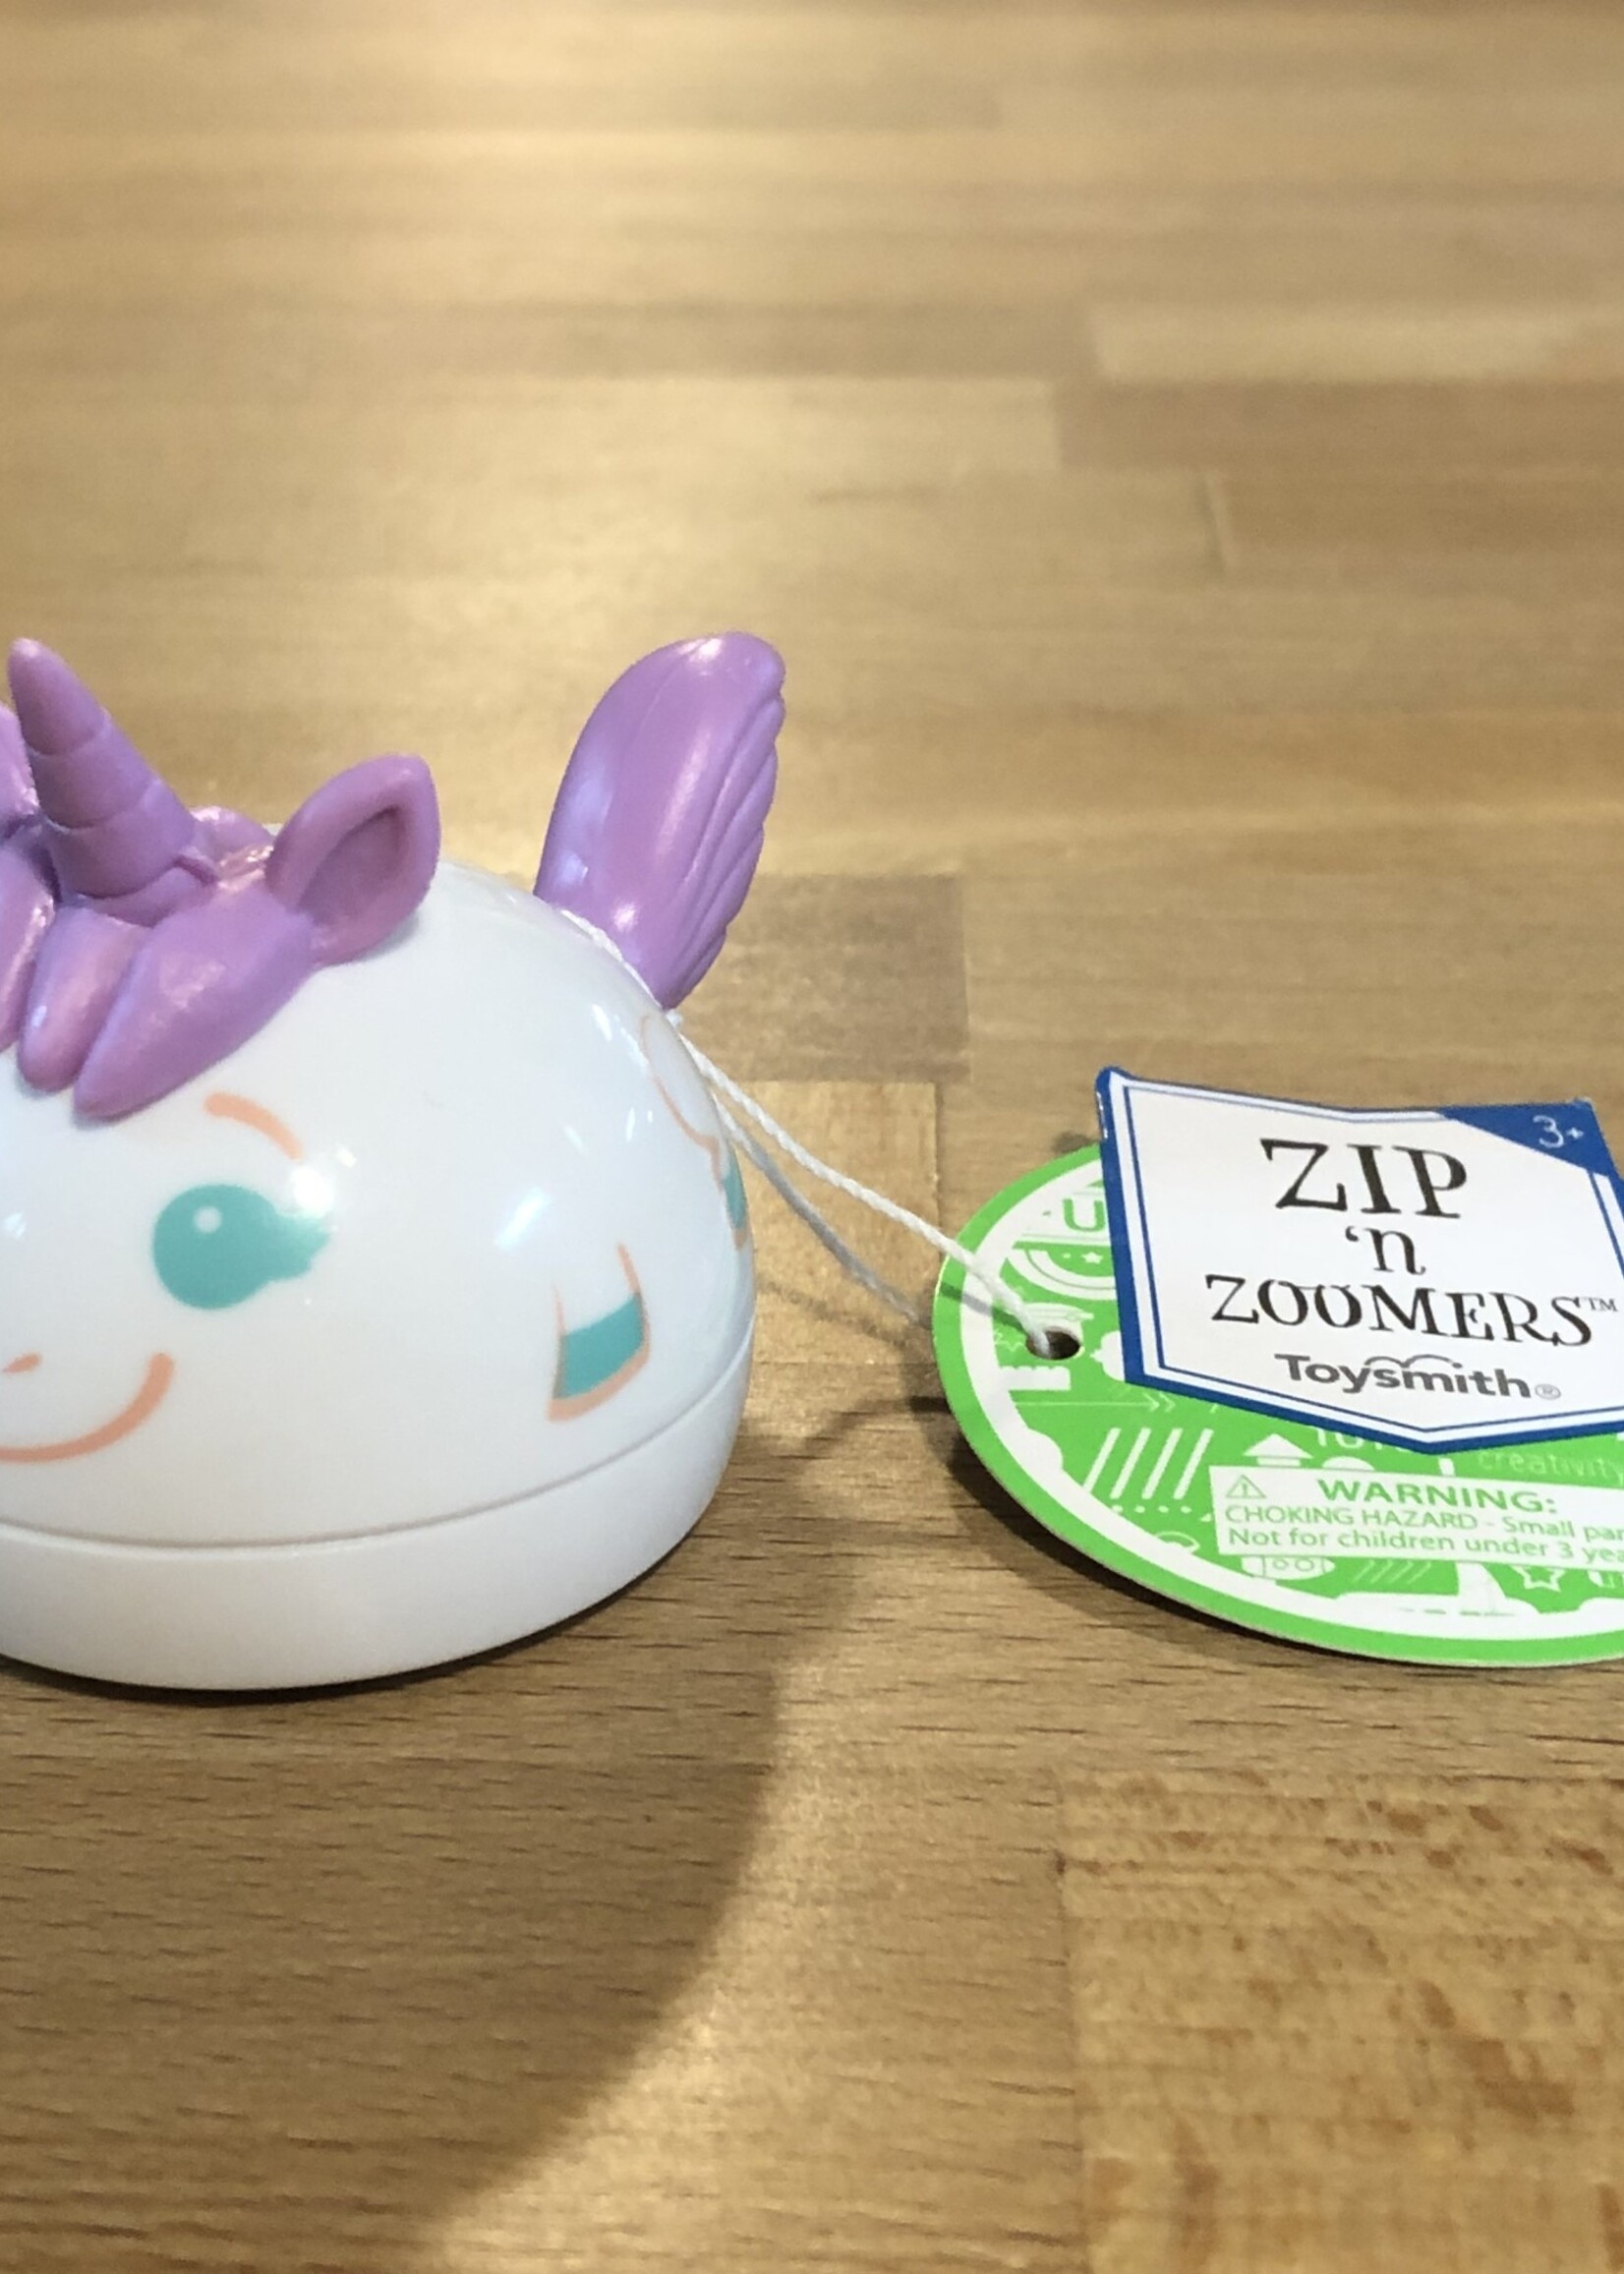 Zip ‘n Zoomers